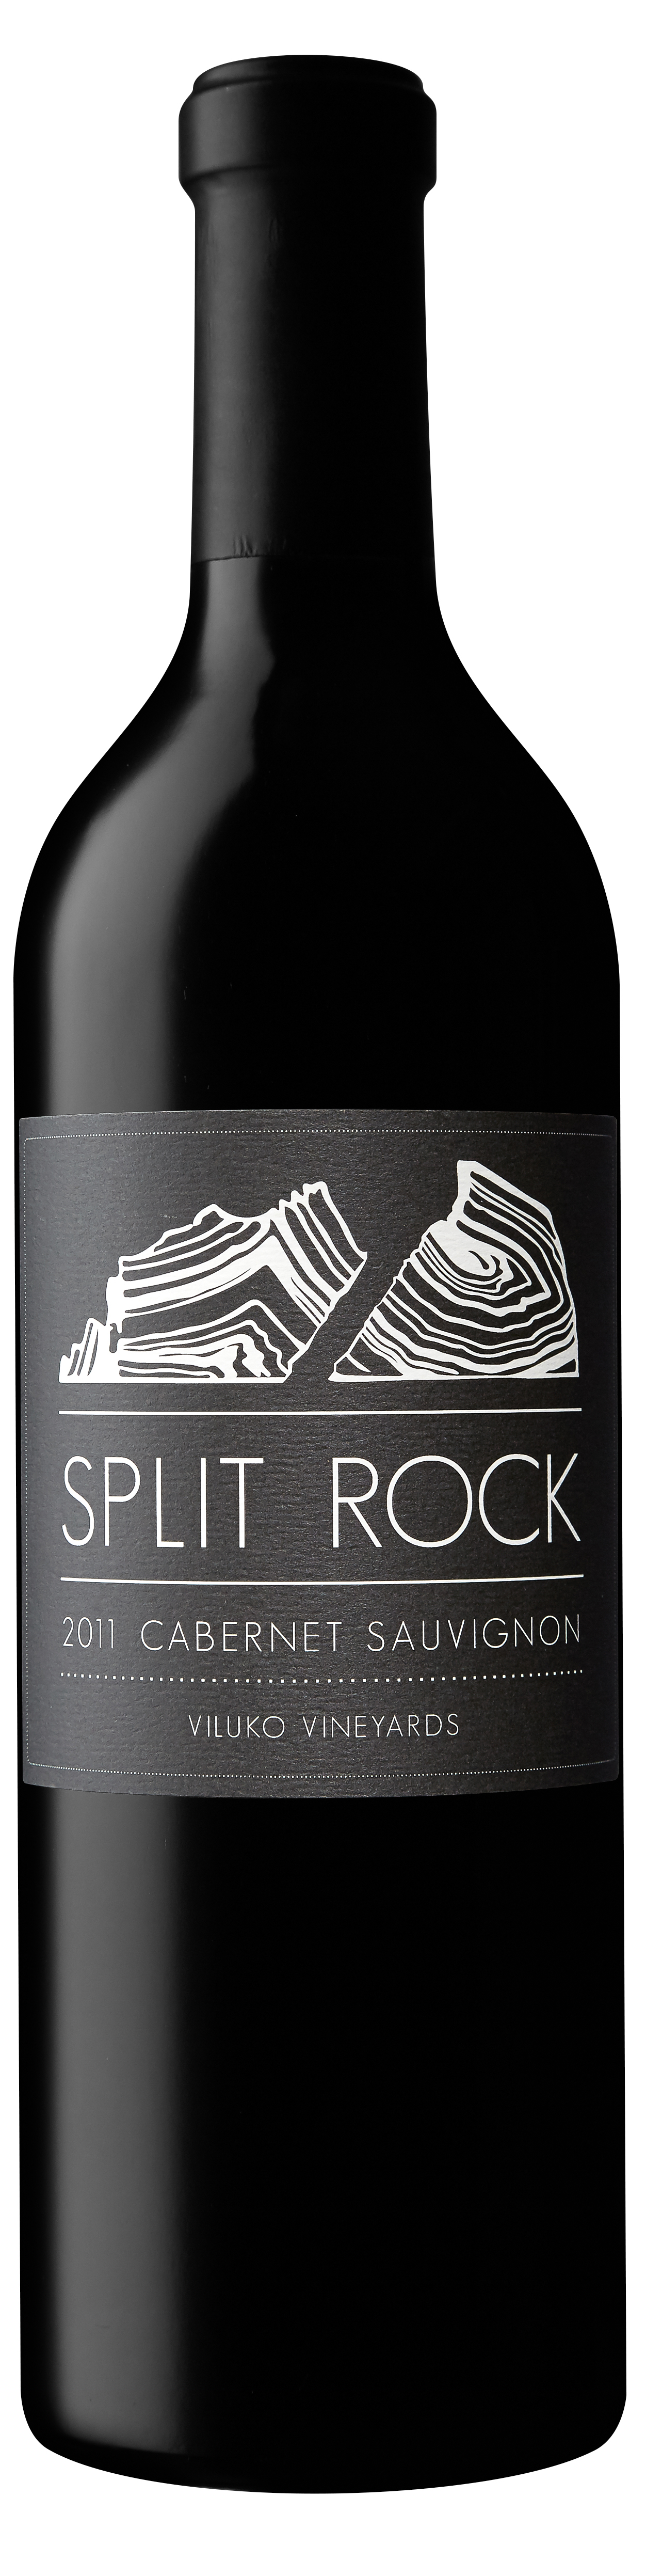 Product Image for 2011 Split Rock Cabernet Sauvignon